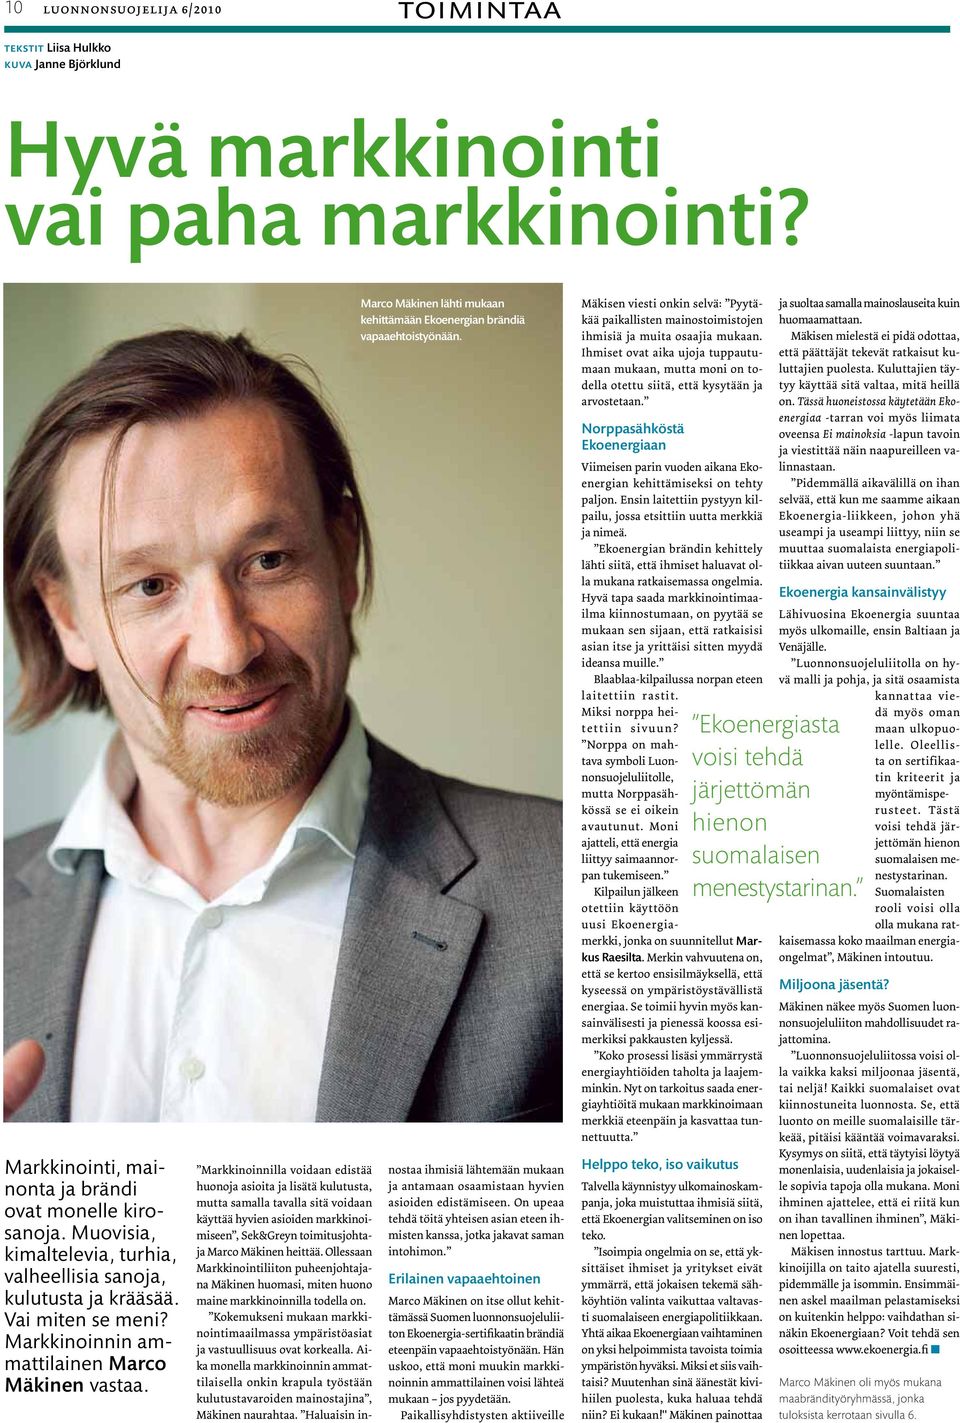 Marco Mäkinen lähti mukaan kehittämään Ekoenergian brändiä vapaaehtoistyönään.